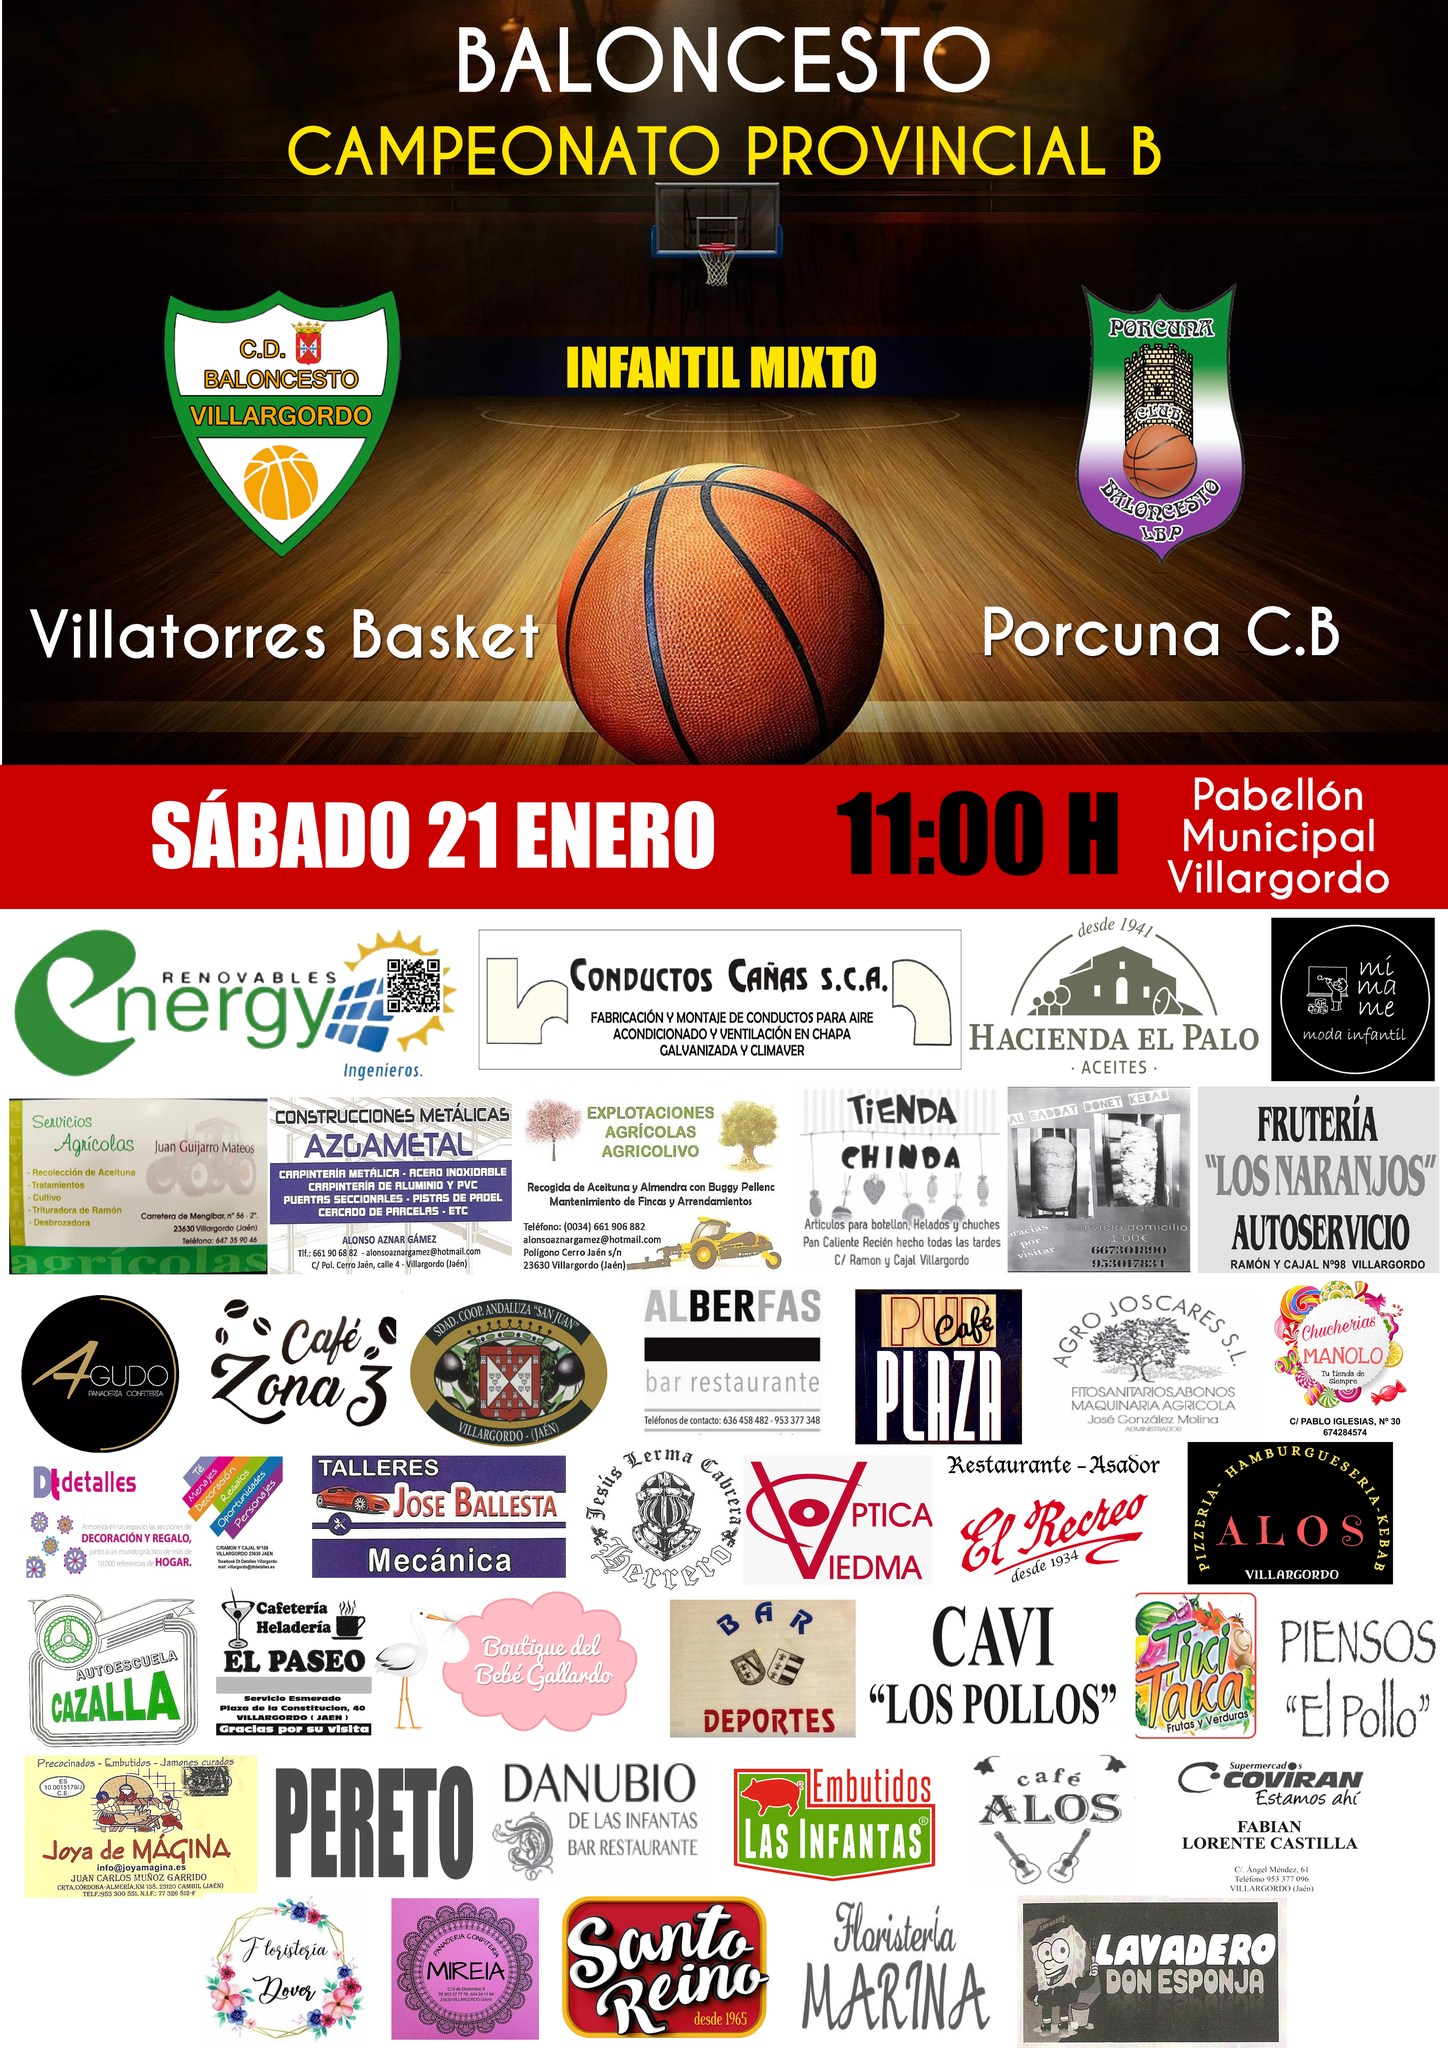 Partido de Baloncesto Villatorres Basket vs Porcuna C.B